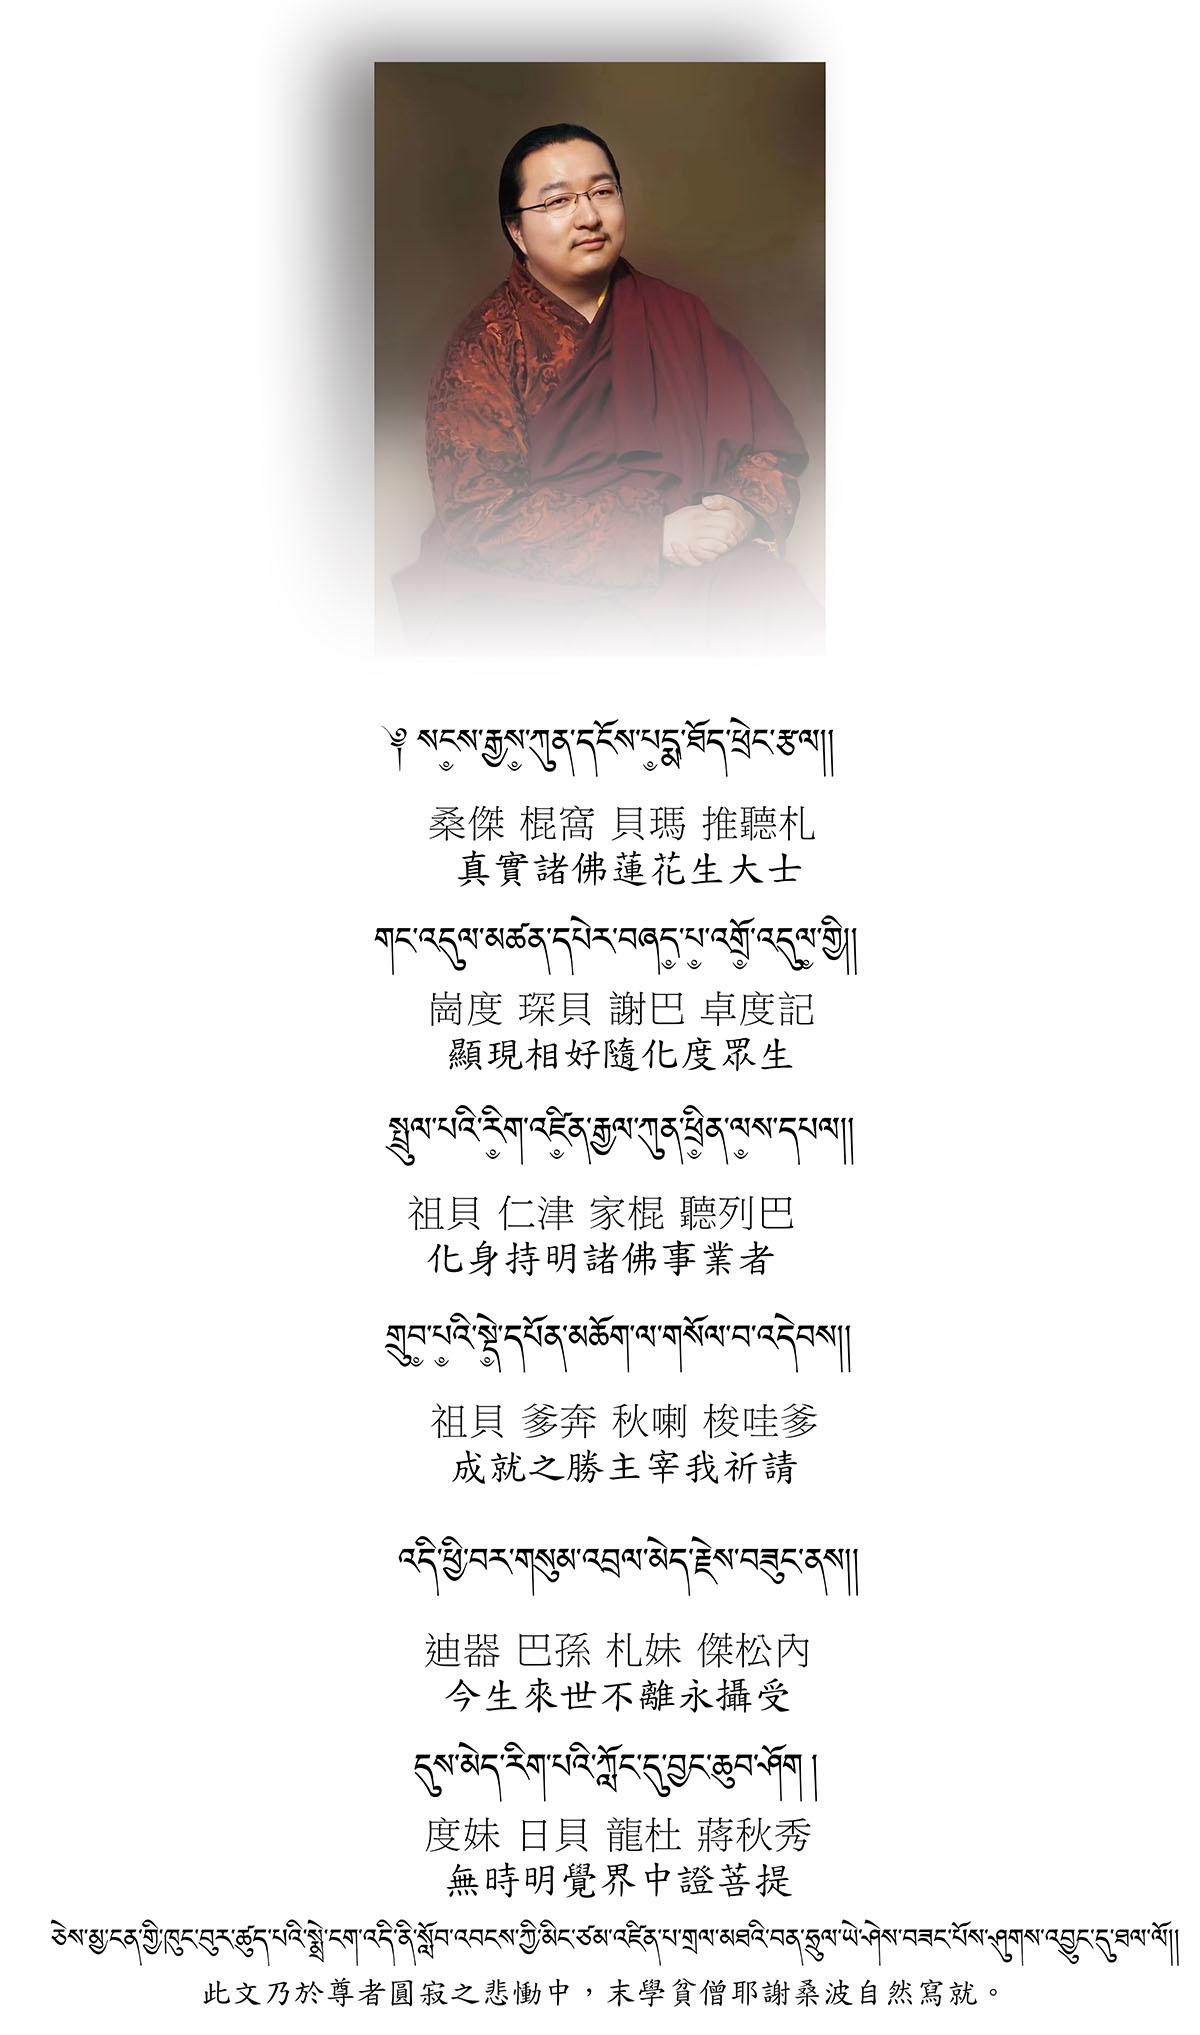 第三世 敦珠法王貝瑪謝巴 迅速轉世祈請文